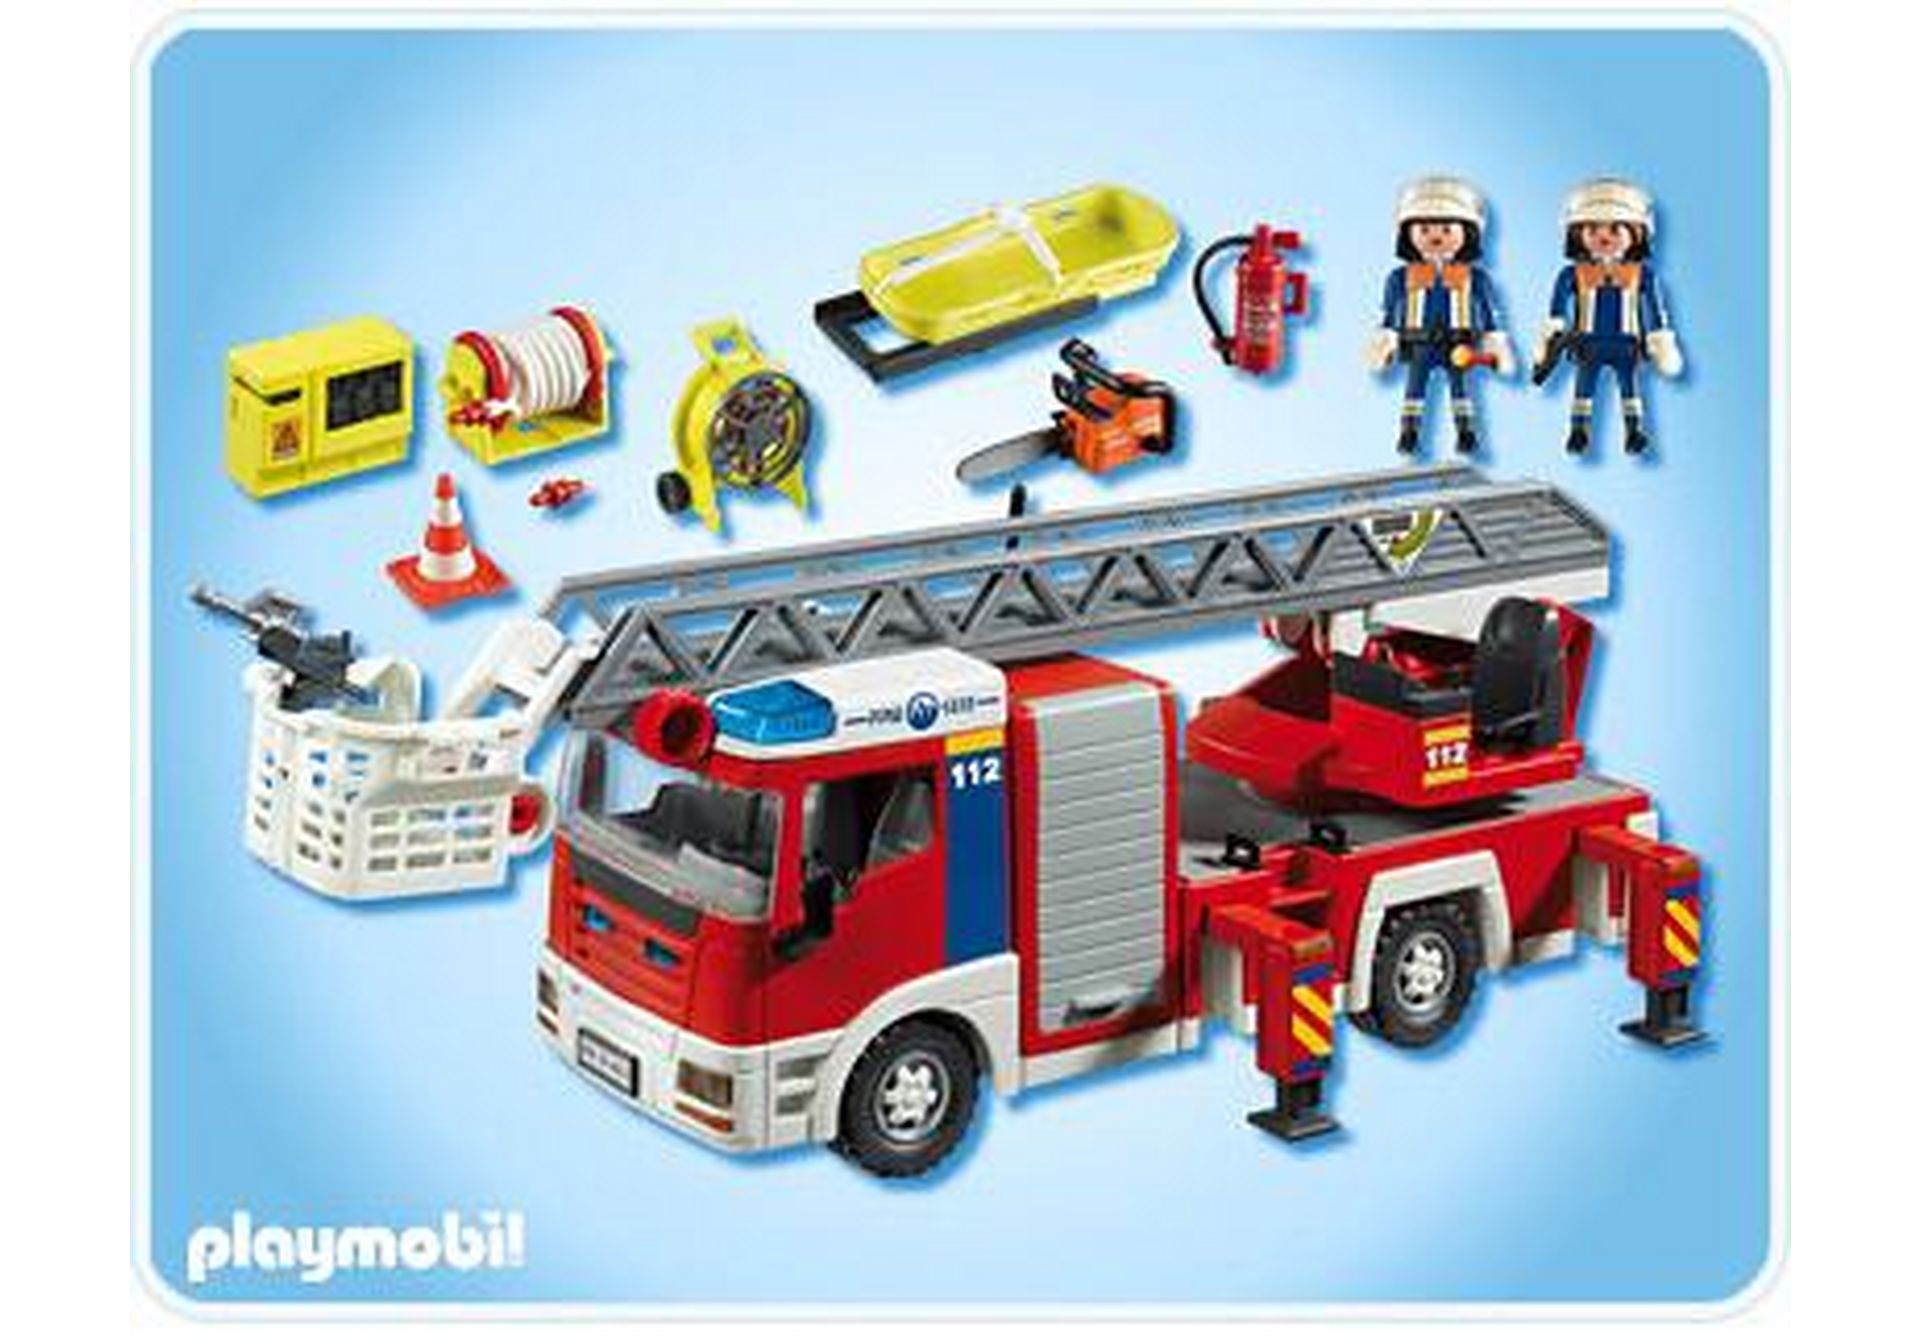 Playmobil Feuerwehr Leiterfahrzeug  Stütze Auslegerstütze aus 4820 #jn611 